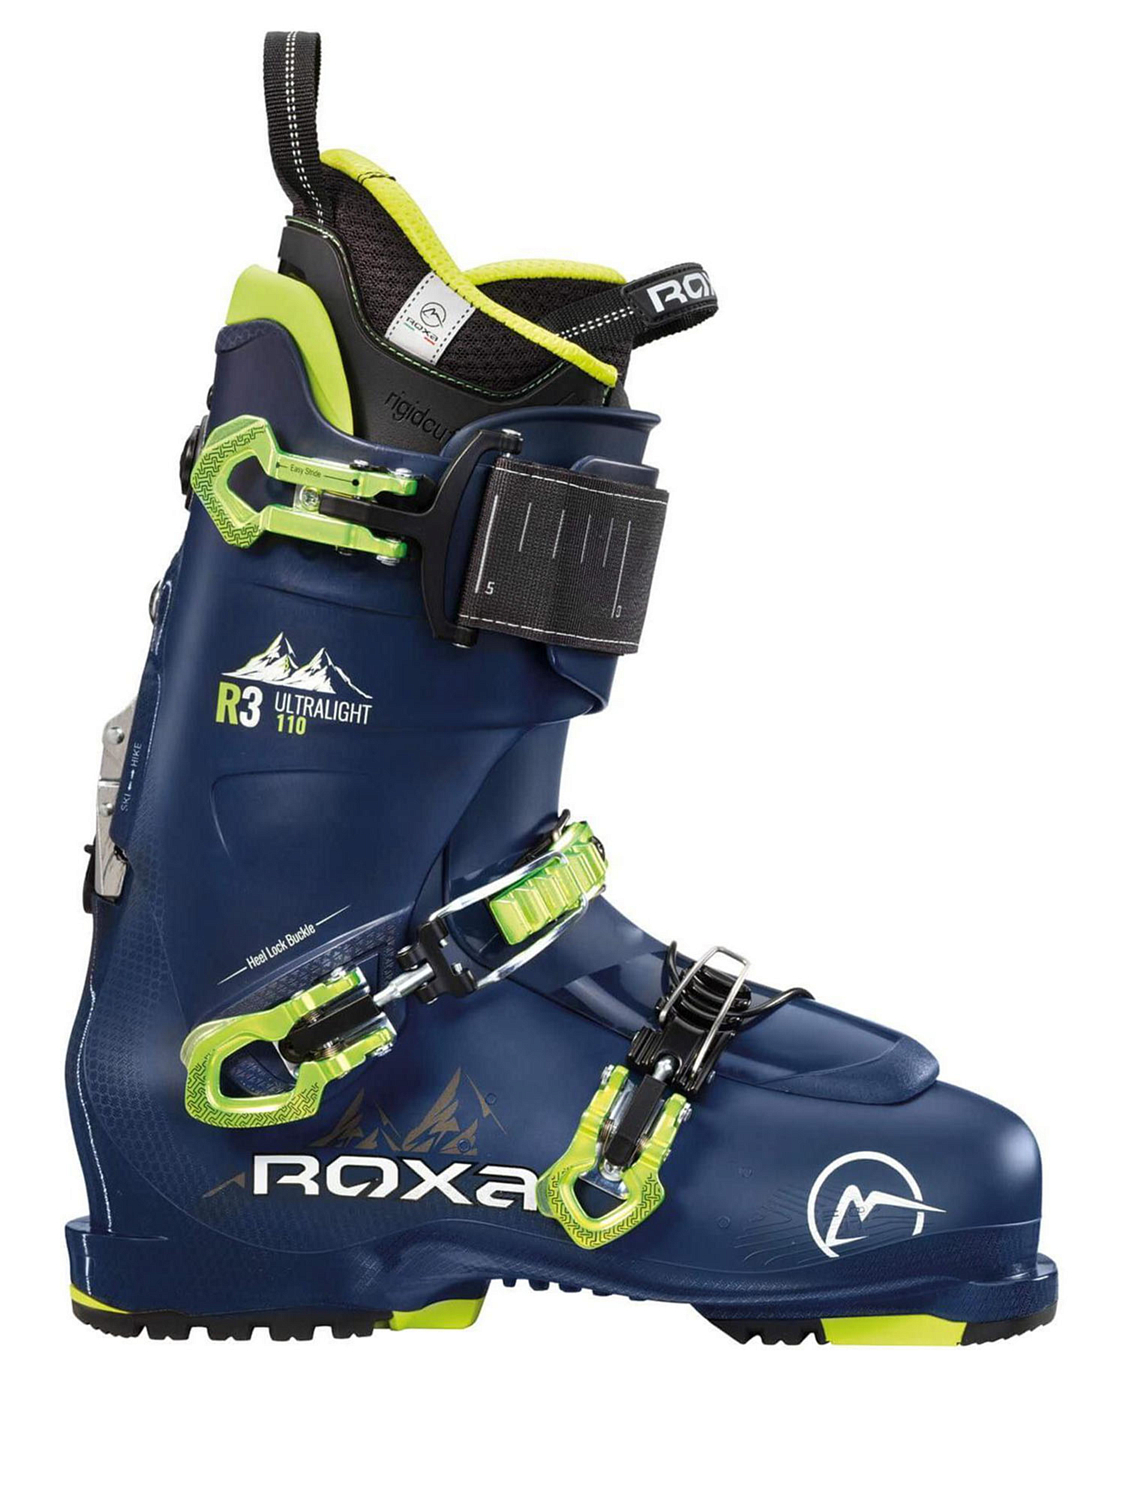 Горнолыжные ботинки ROXA R3 110 I.R Blue